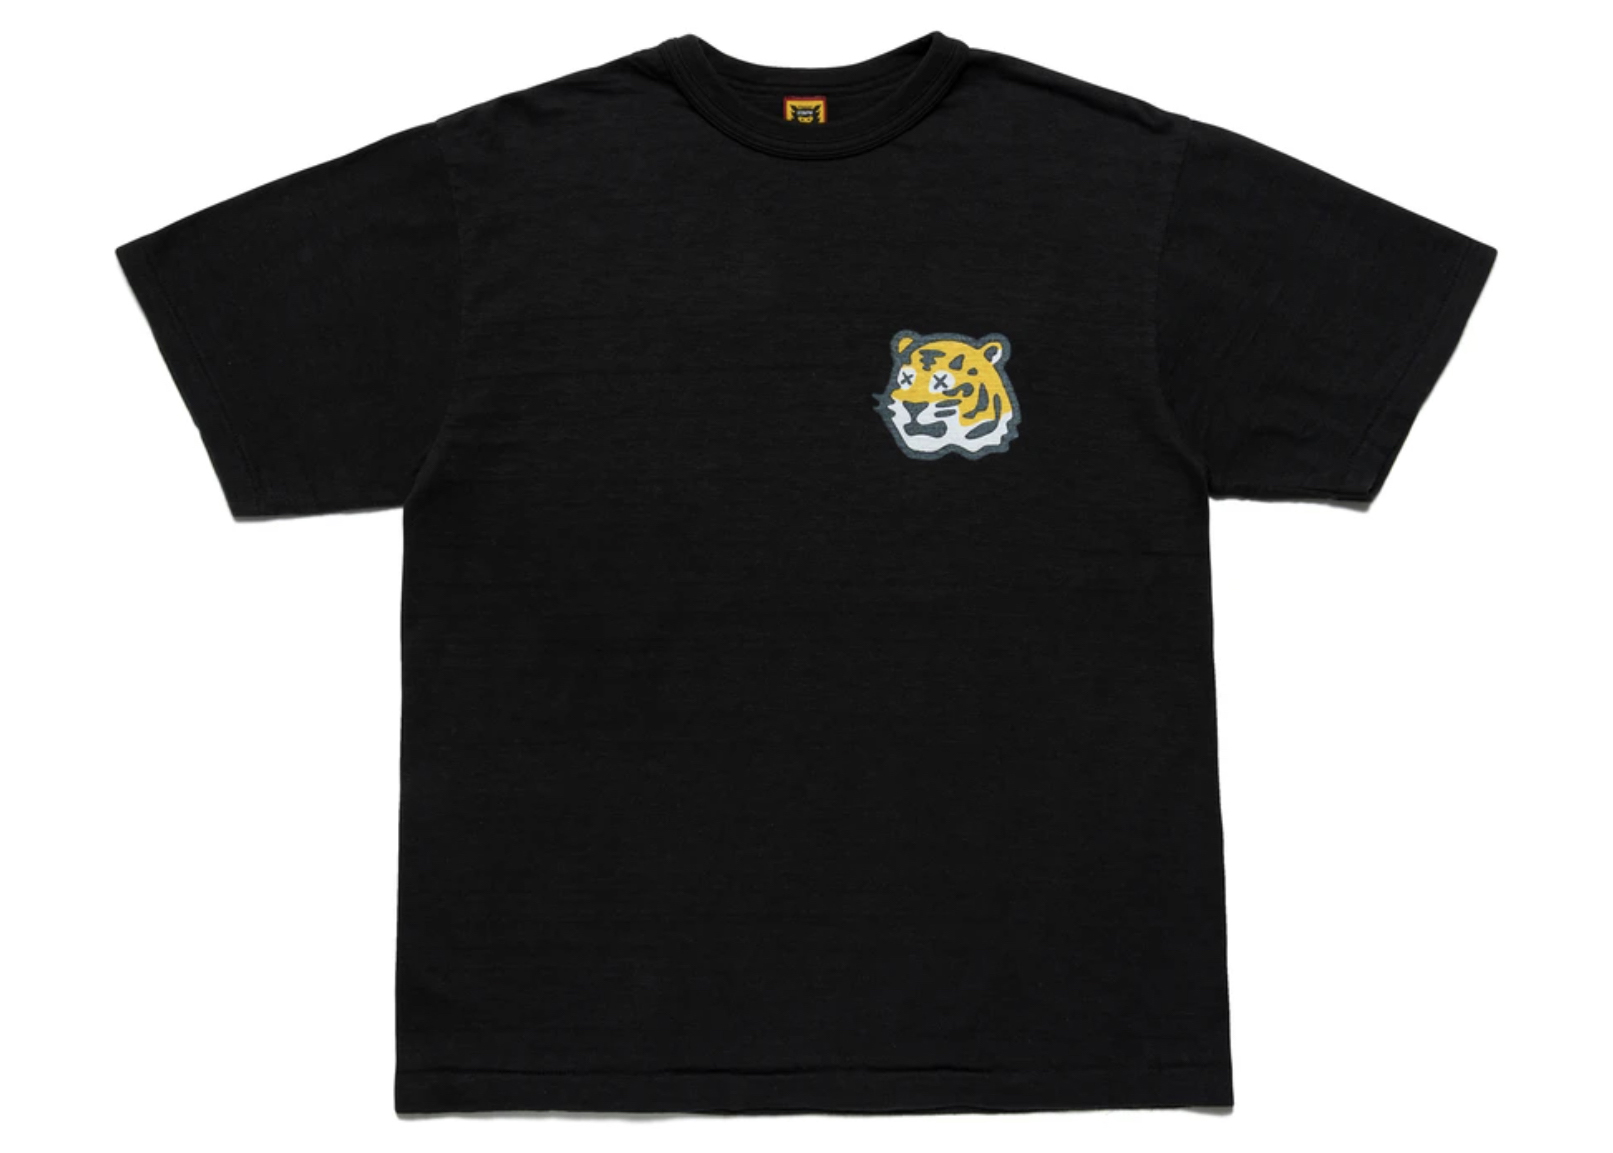 Human Made x KAWS #4 T-shirt Black Men's - SS21 - US